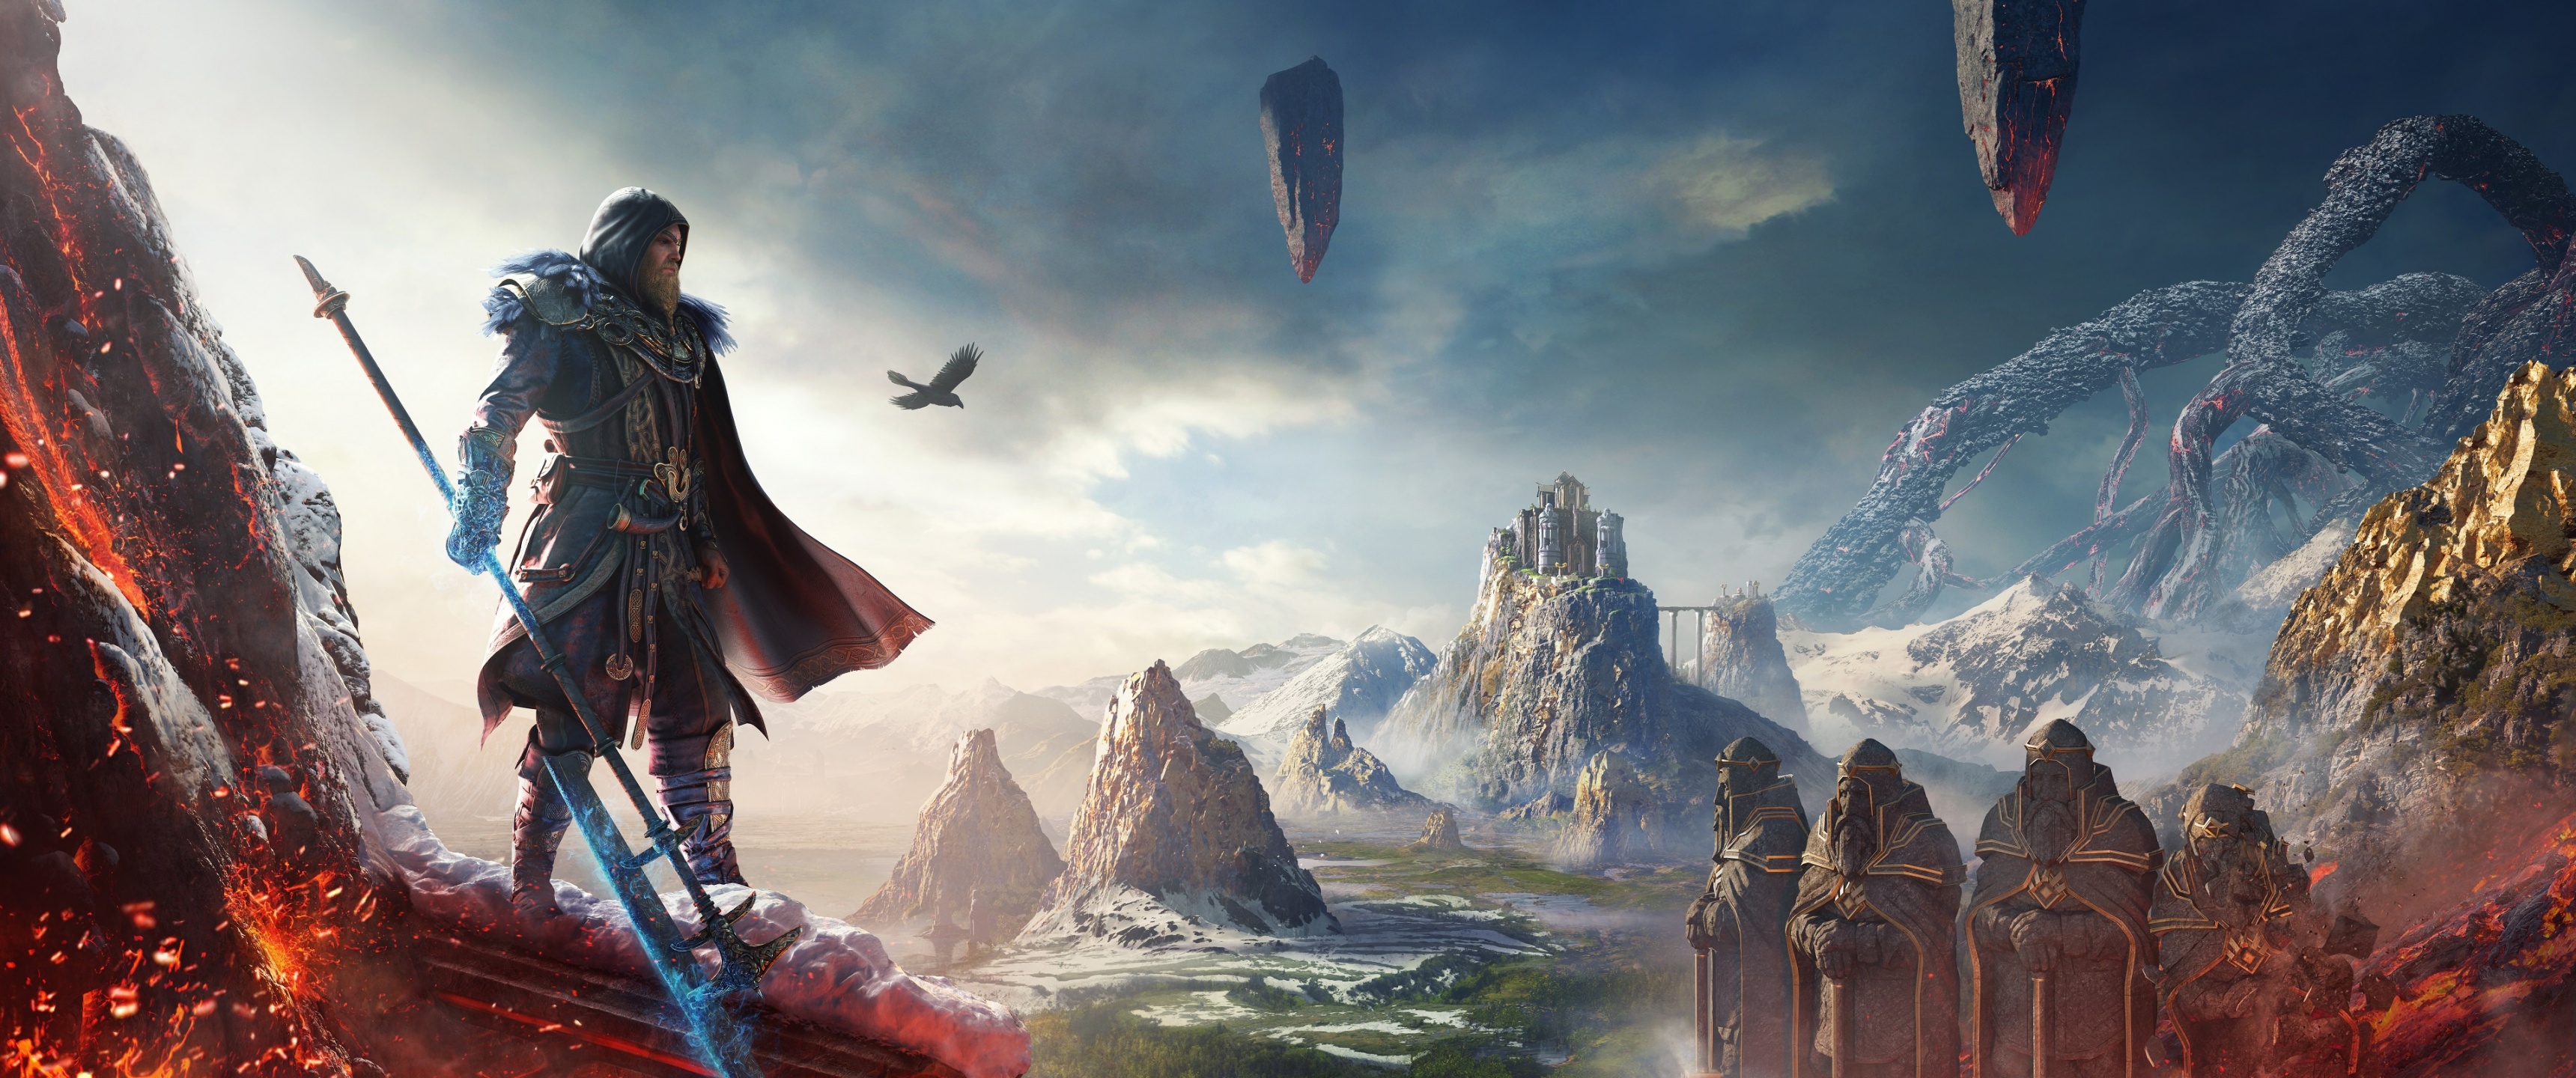 Assassin's Creed Valhalla Wallpaper 4K, Dawn of Ragnarok, Odin, DLC, 2022 Games, Games